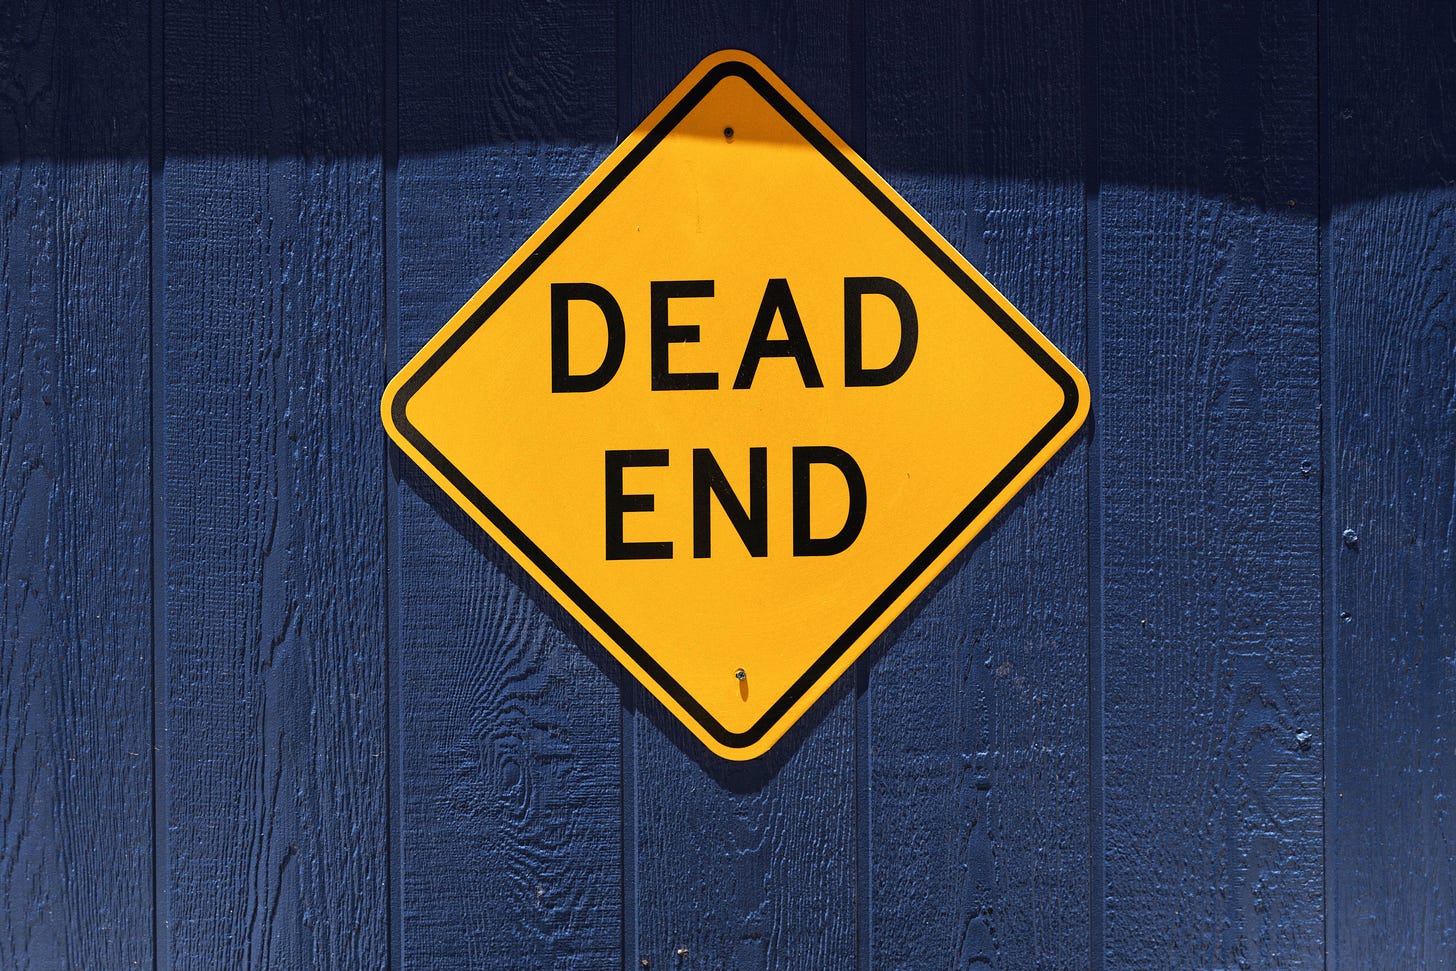 Cartello giallo a rombo con scritto "dead end" su sfondo blu